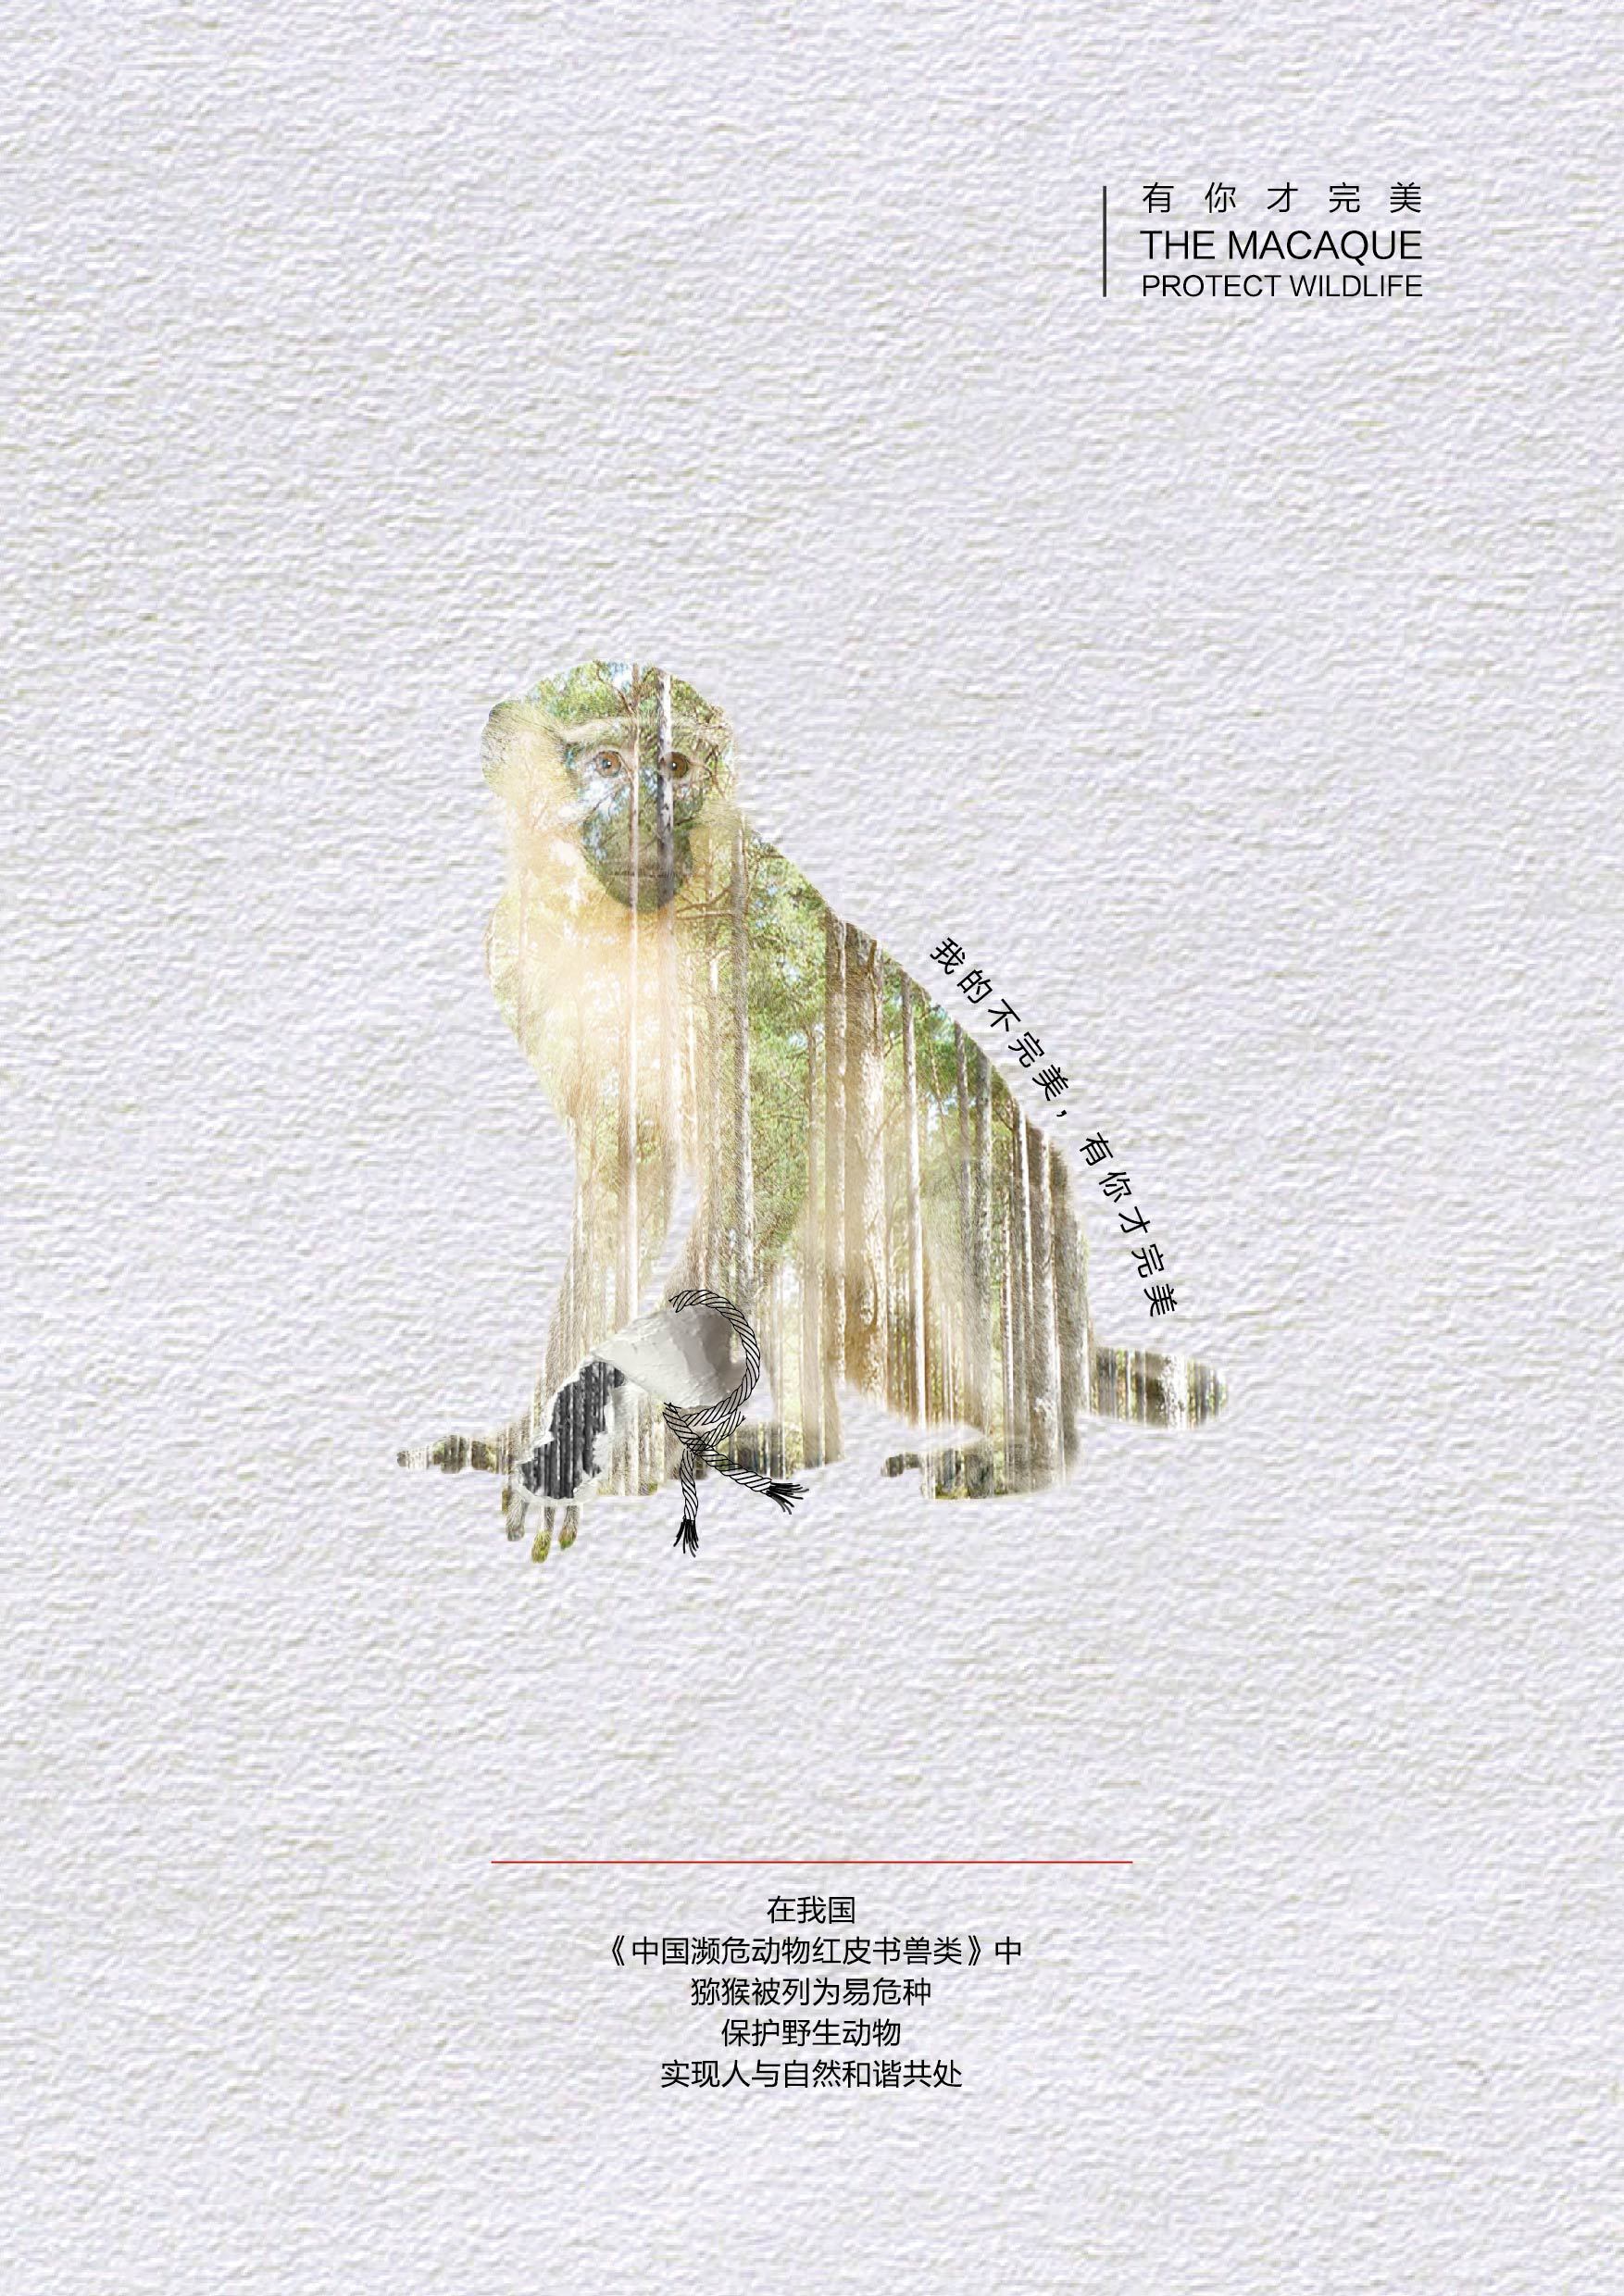 保护野生动物系列公益广告设计